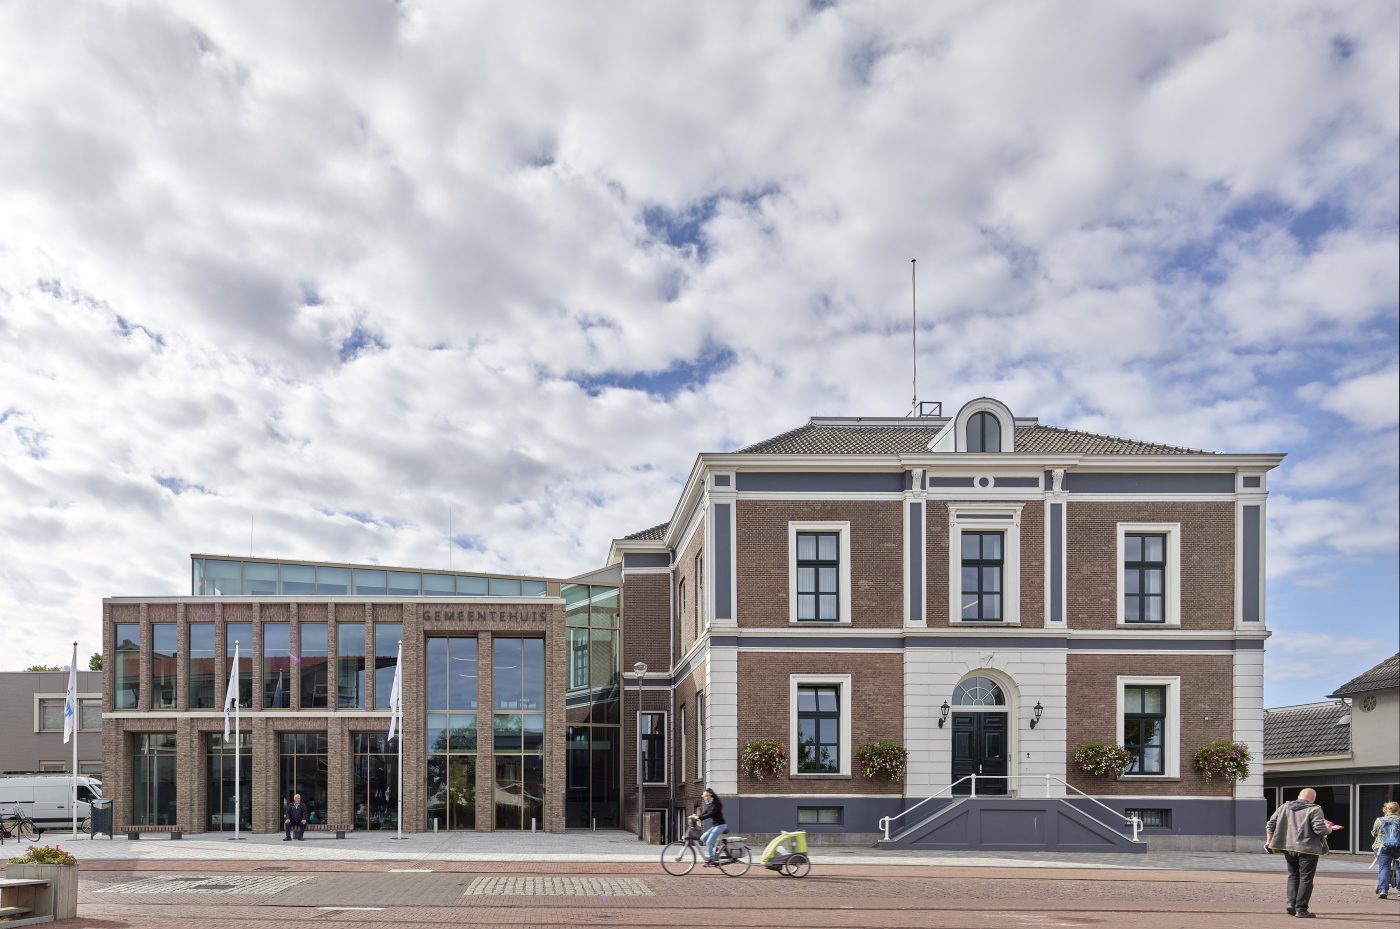 Nieuwbouw gemeentehuis Overbetuwe sluit aan op architectuurhistorie